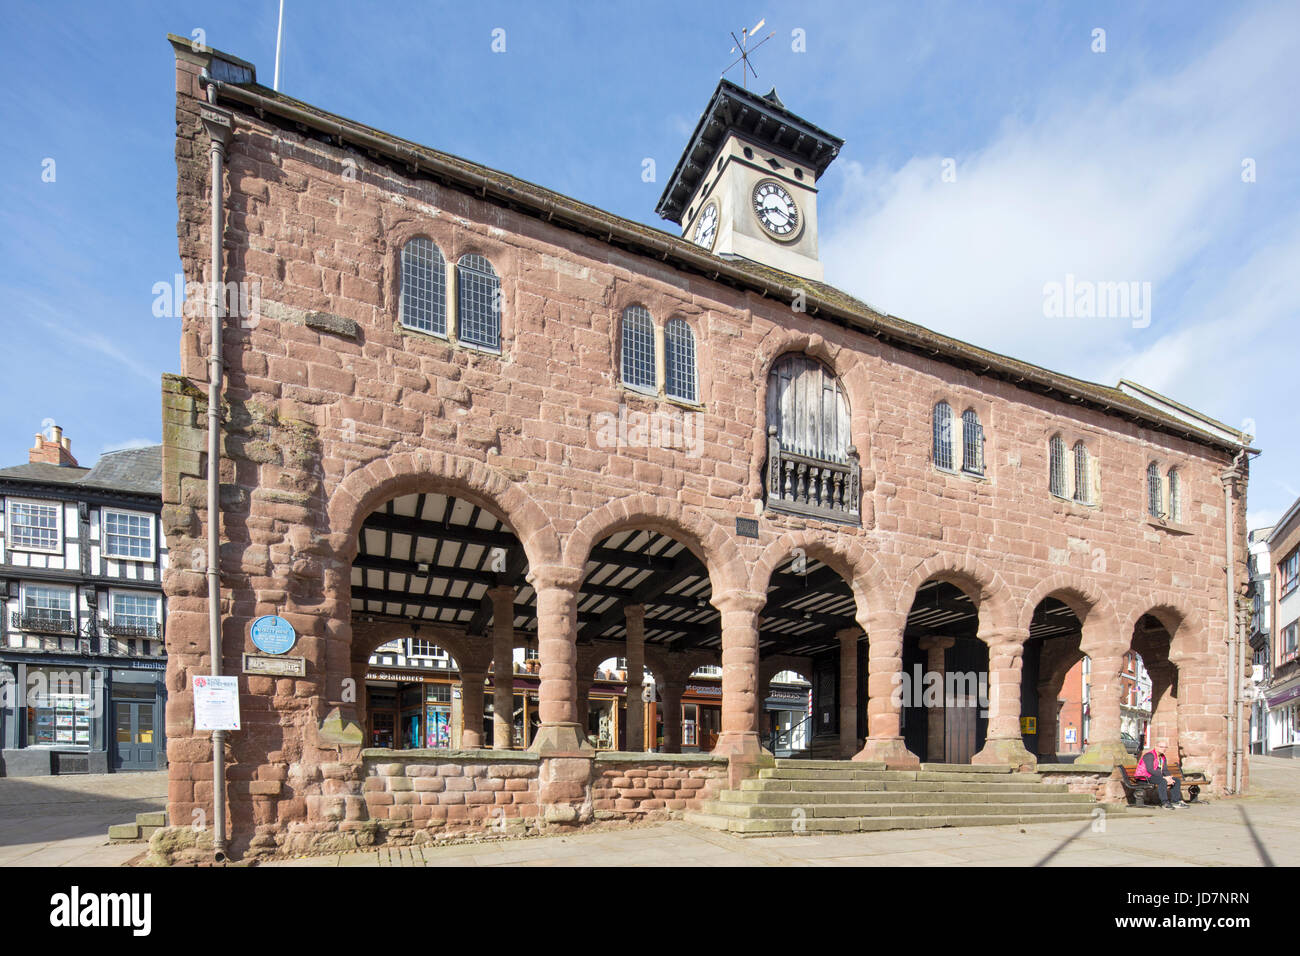 The historic Market House, Ross on Wye, Herefordshire, England, UK Stock Photo